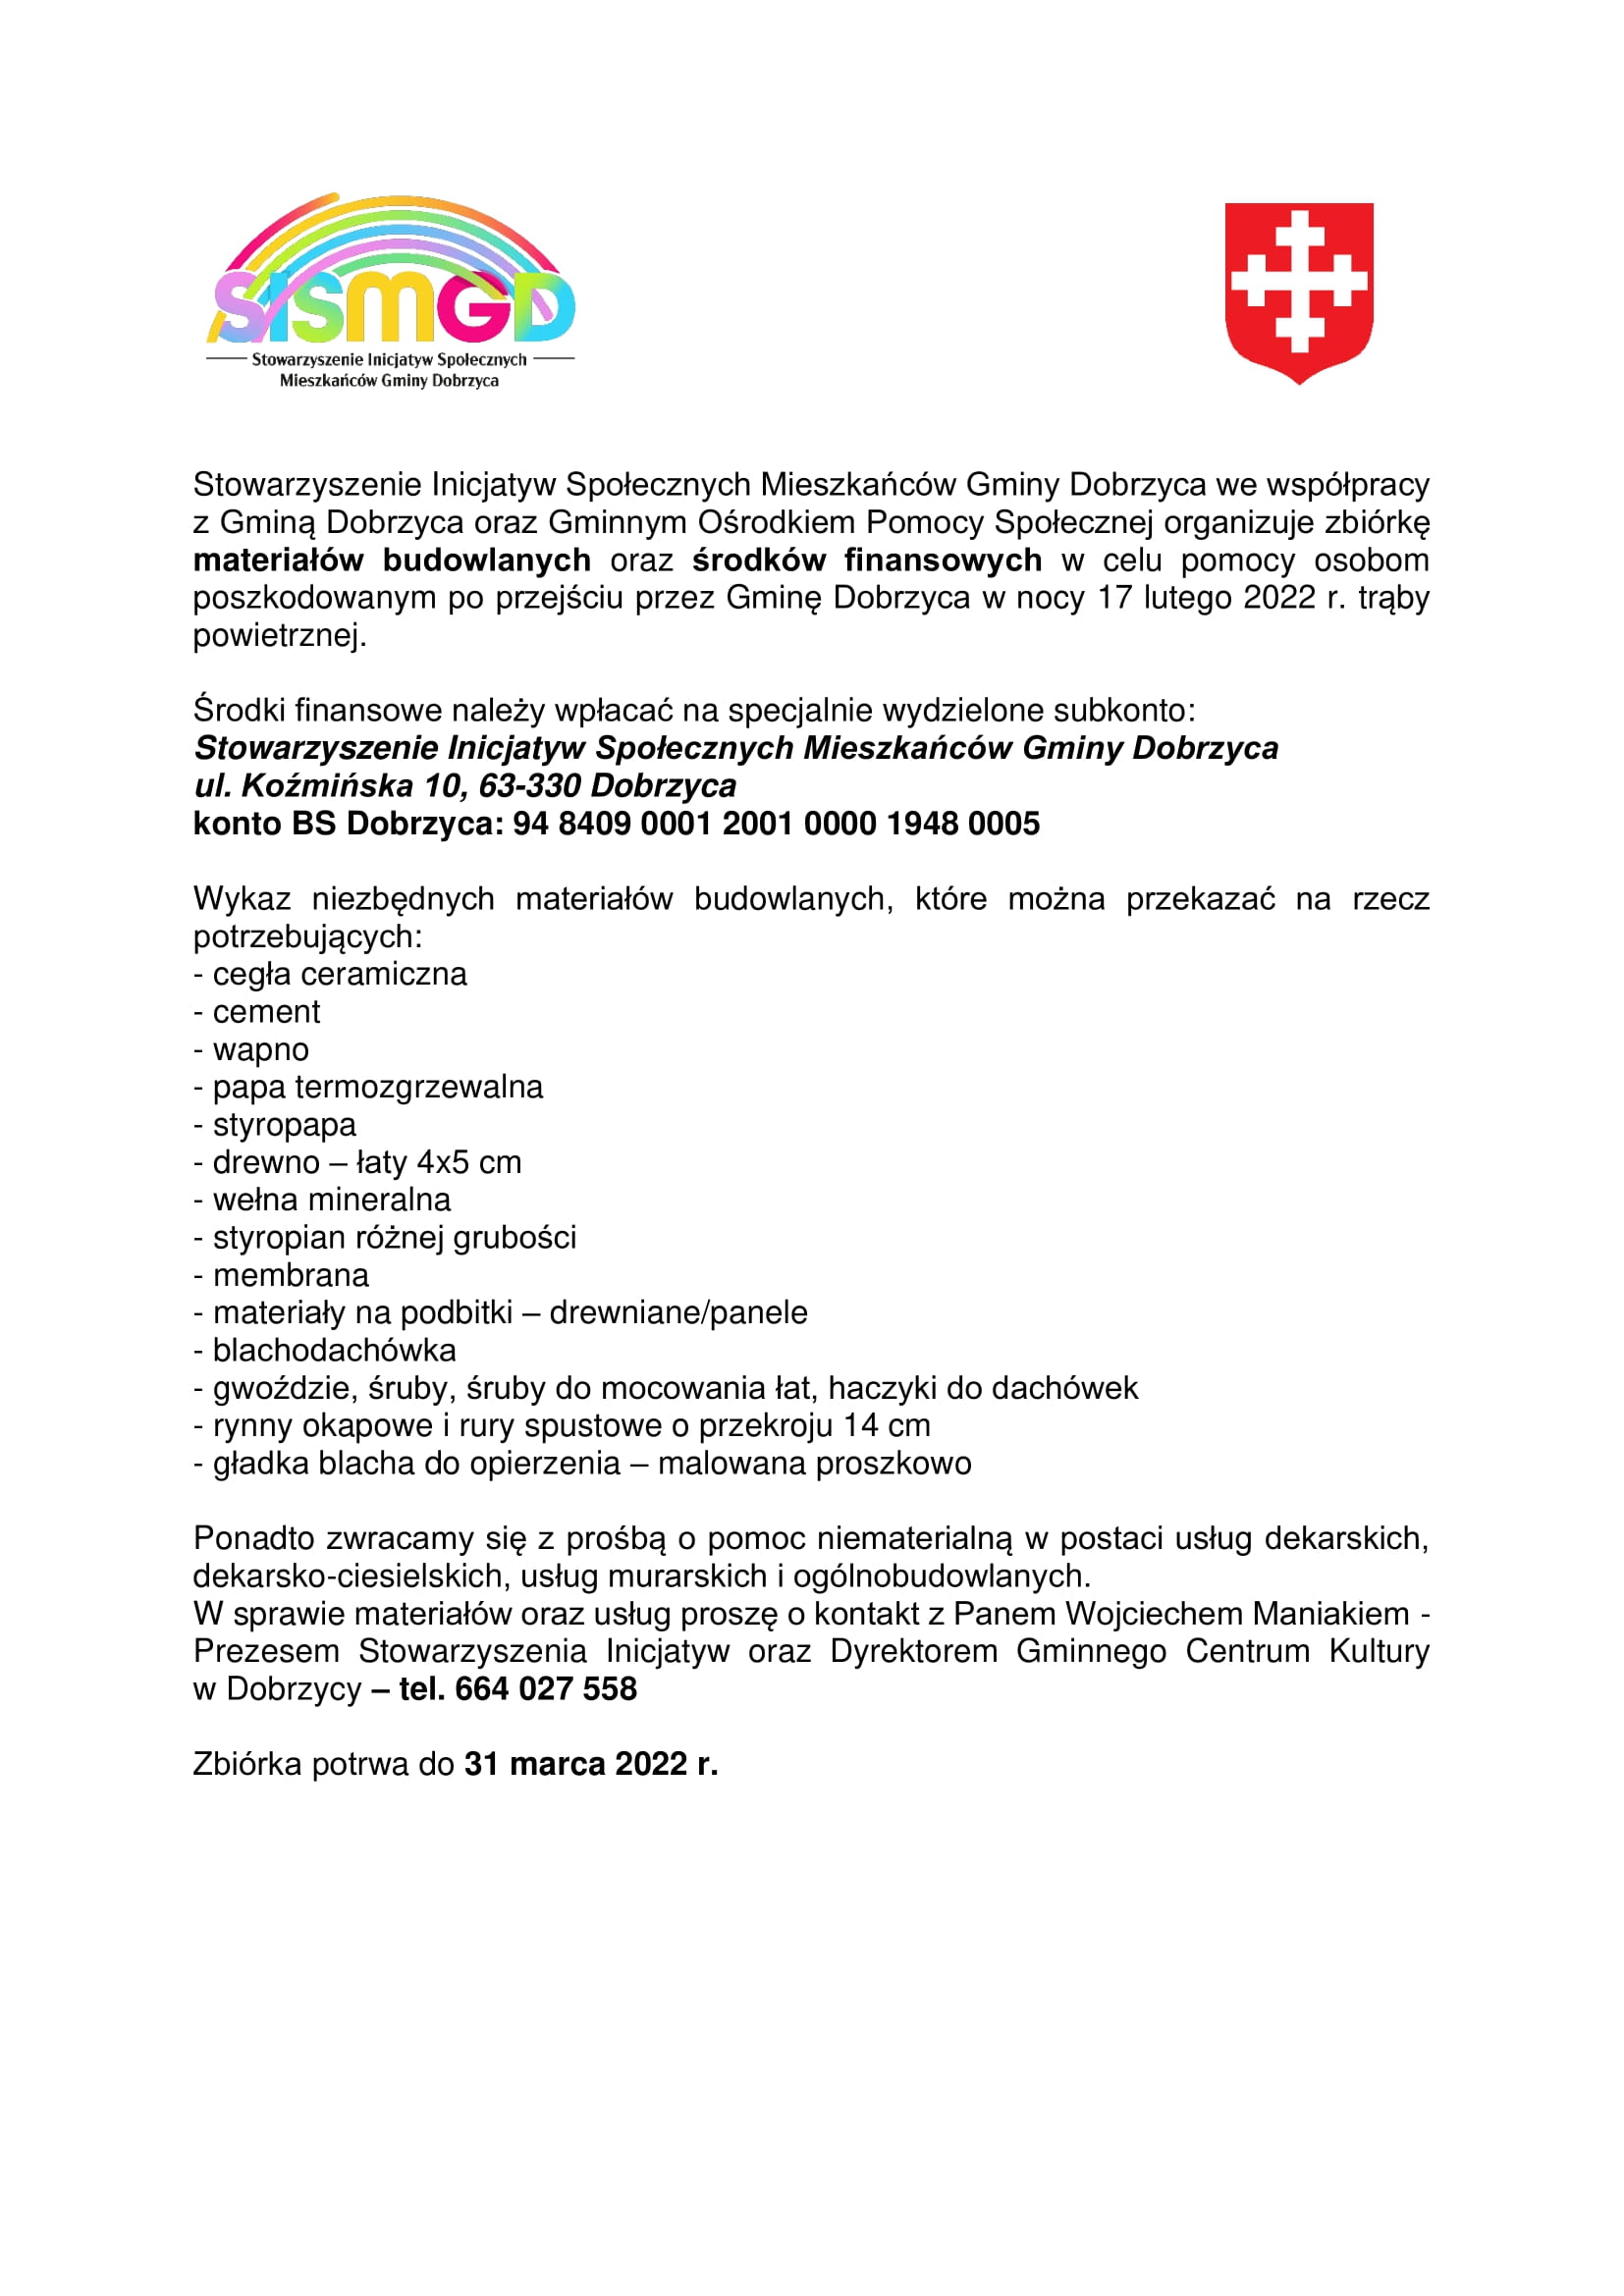 Zbiórka w celu pomocy osobom poszkodowanym po przejściu trąby powietrznej przez Gminę Dobrzyca w nocy 17 lutego 2022 r.